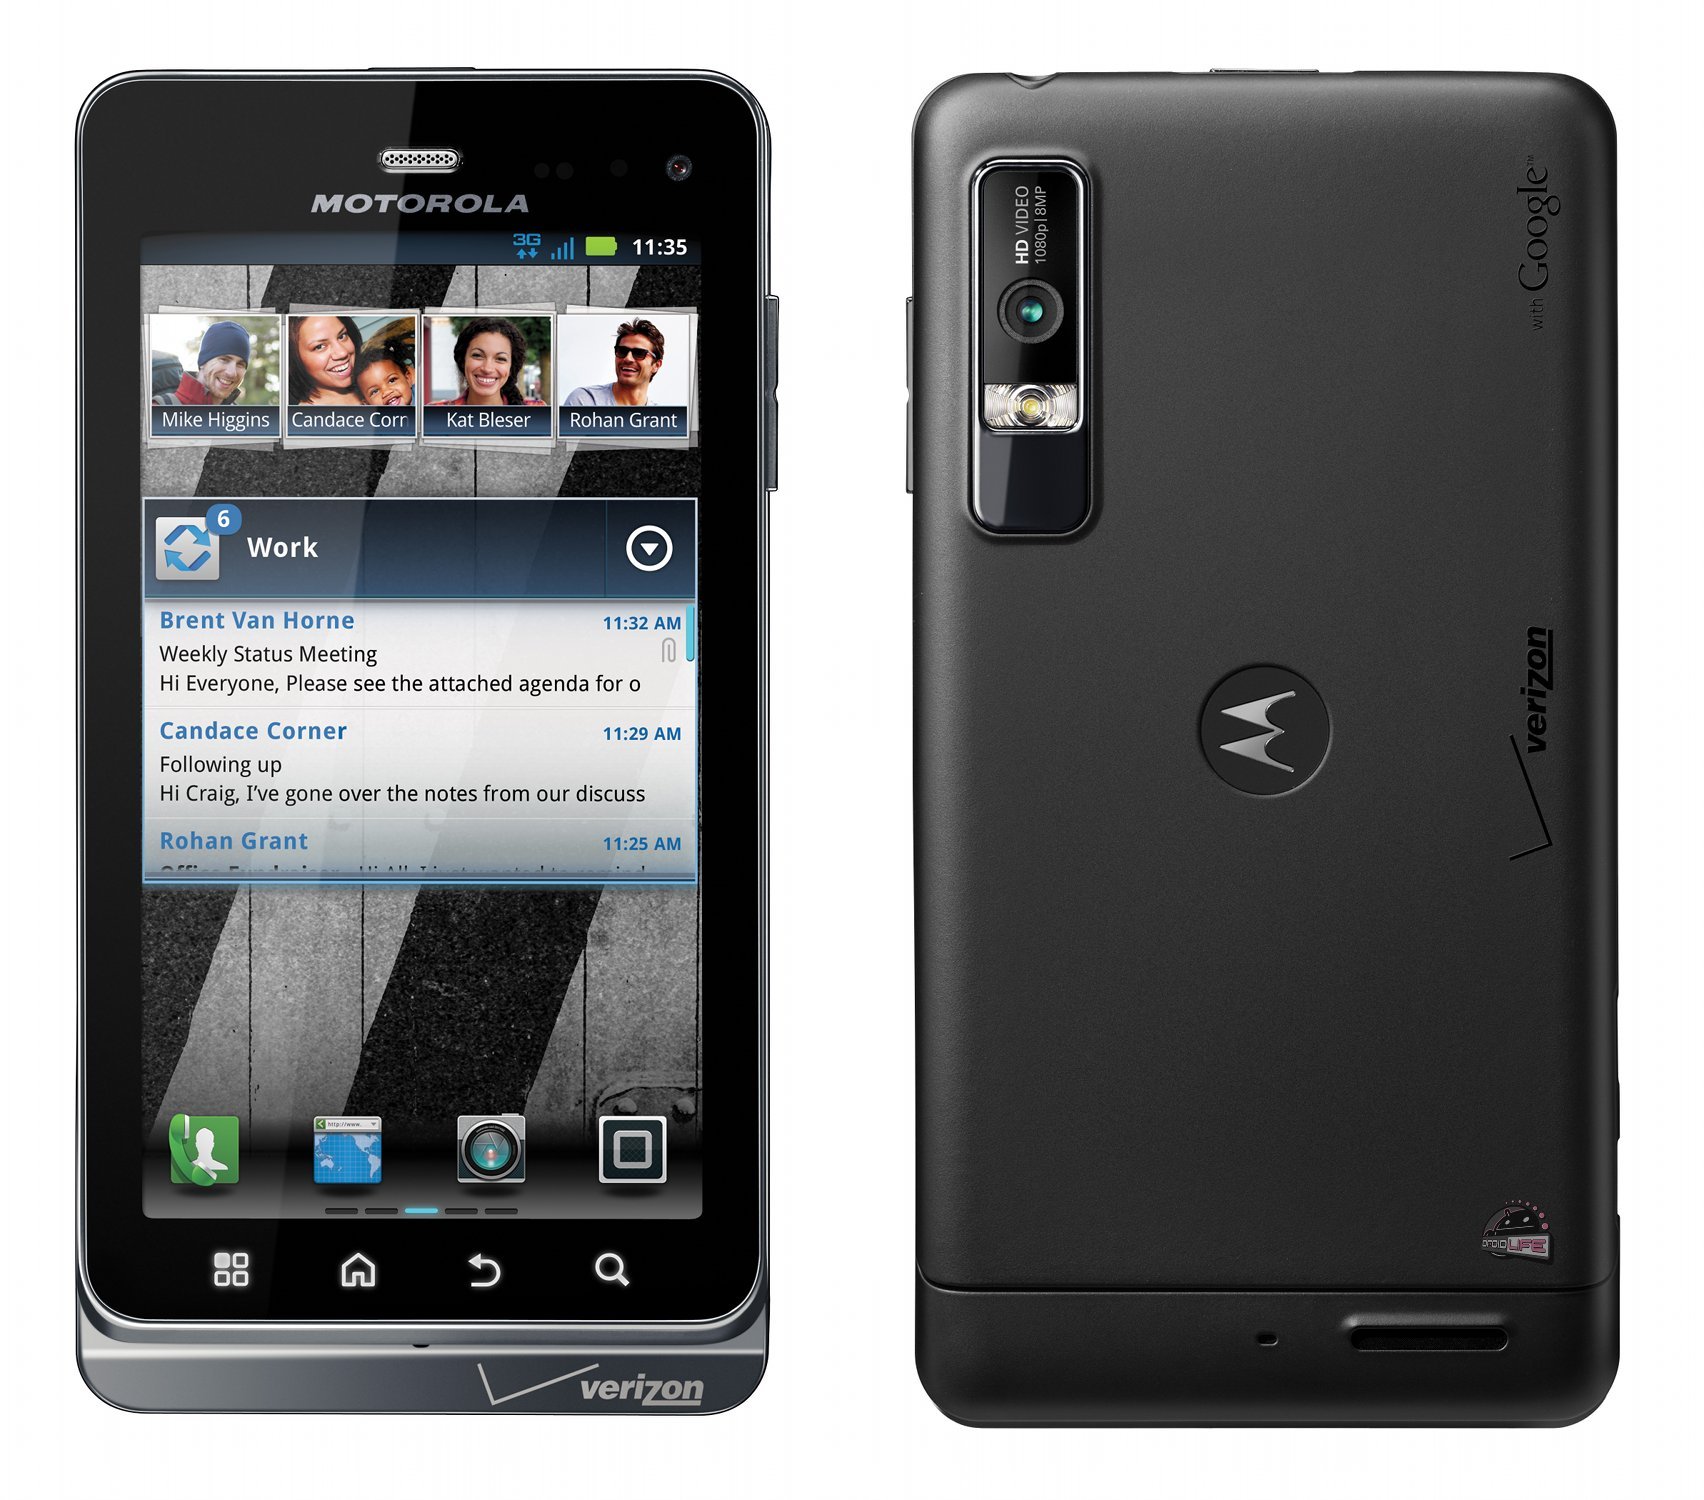 Fotos del Motorola Droid 3 #rumor